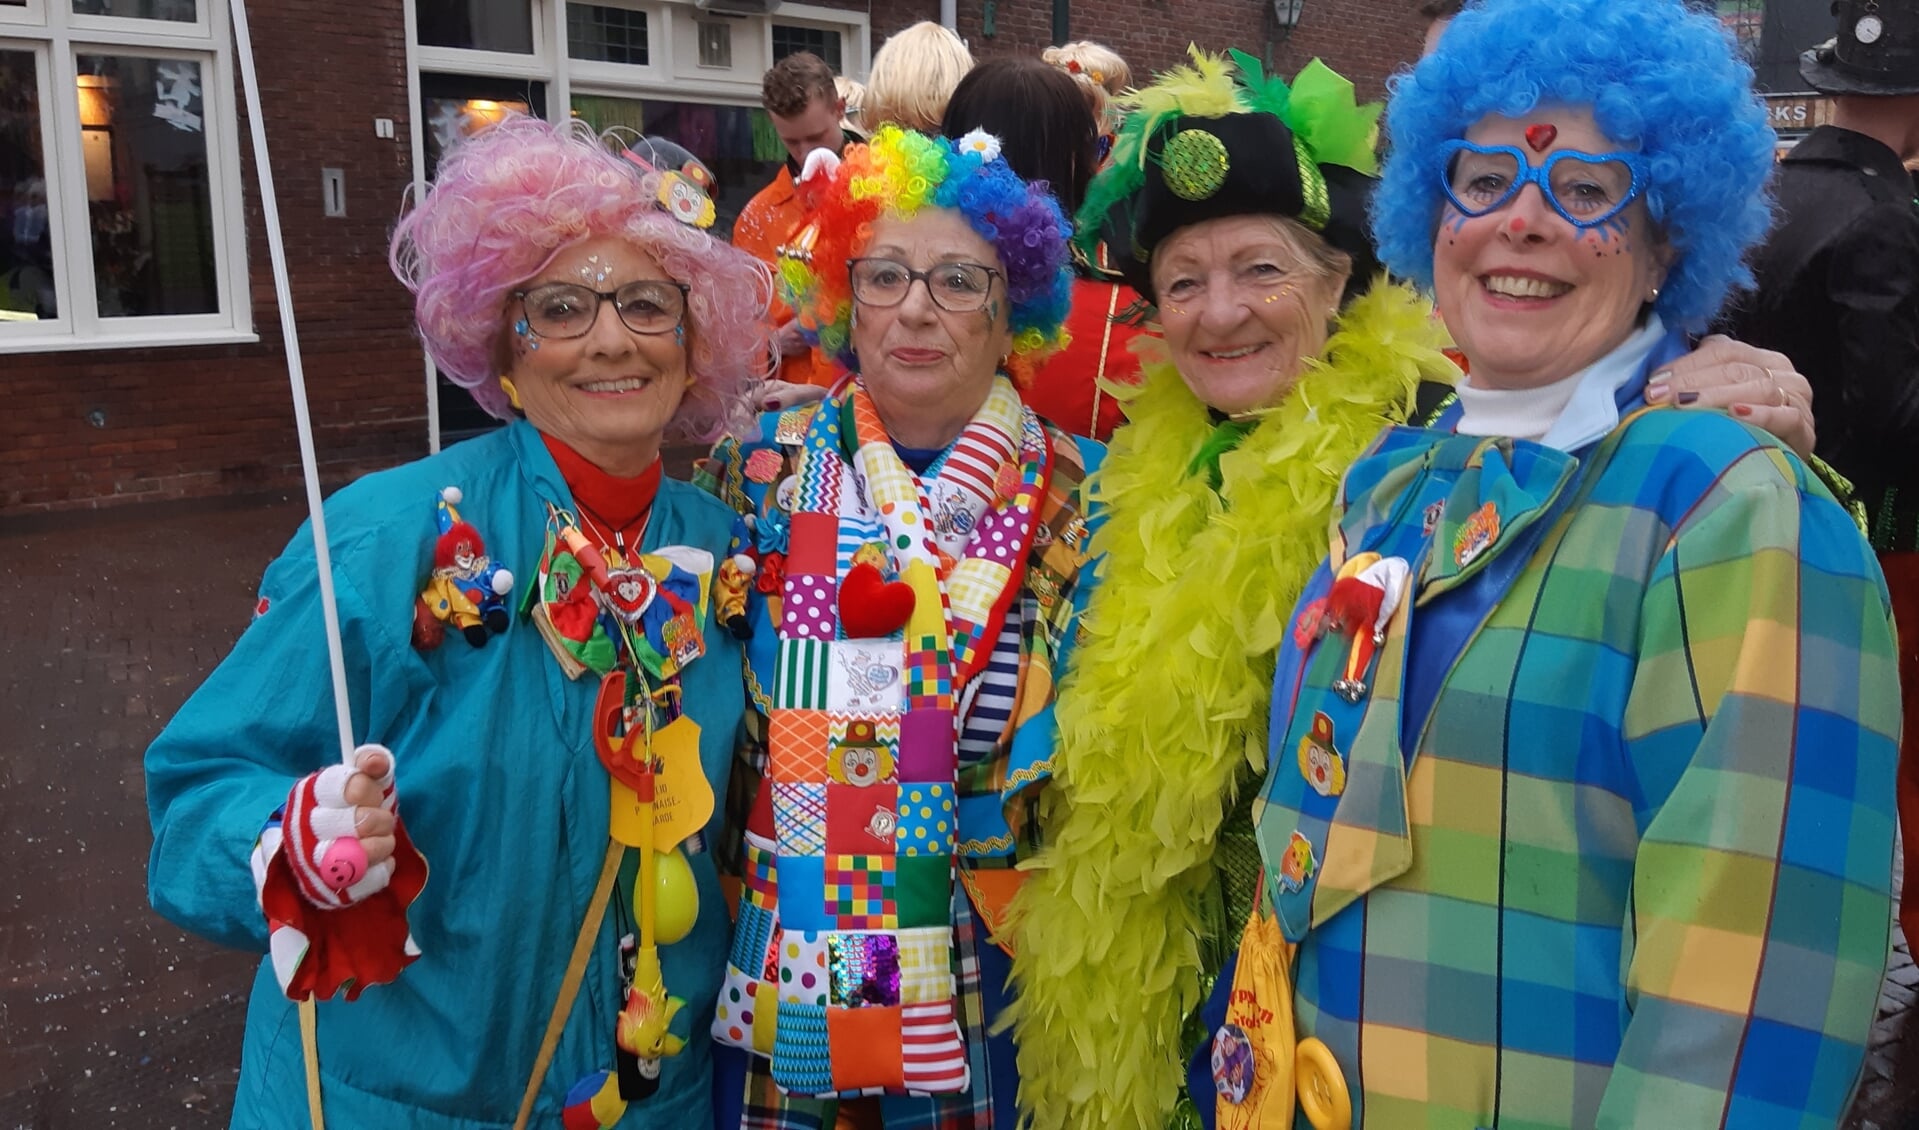 Vrolijk uitgedoste carnavalisten op straat. Foto: Ferry Broshuis